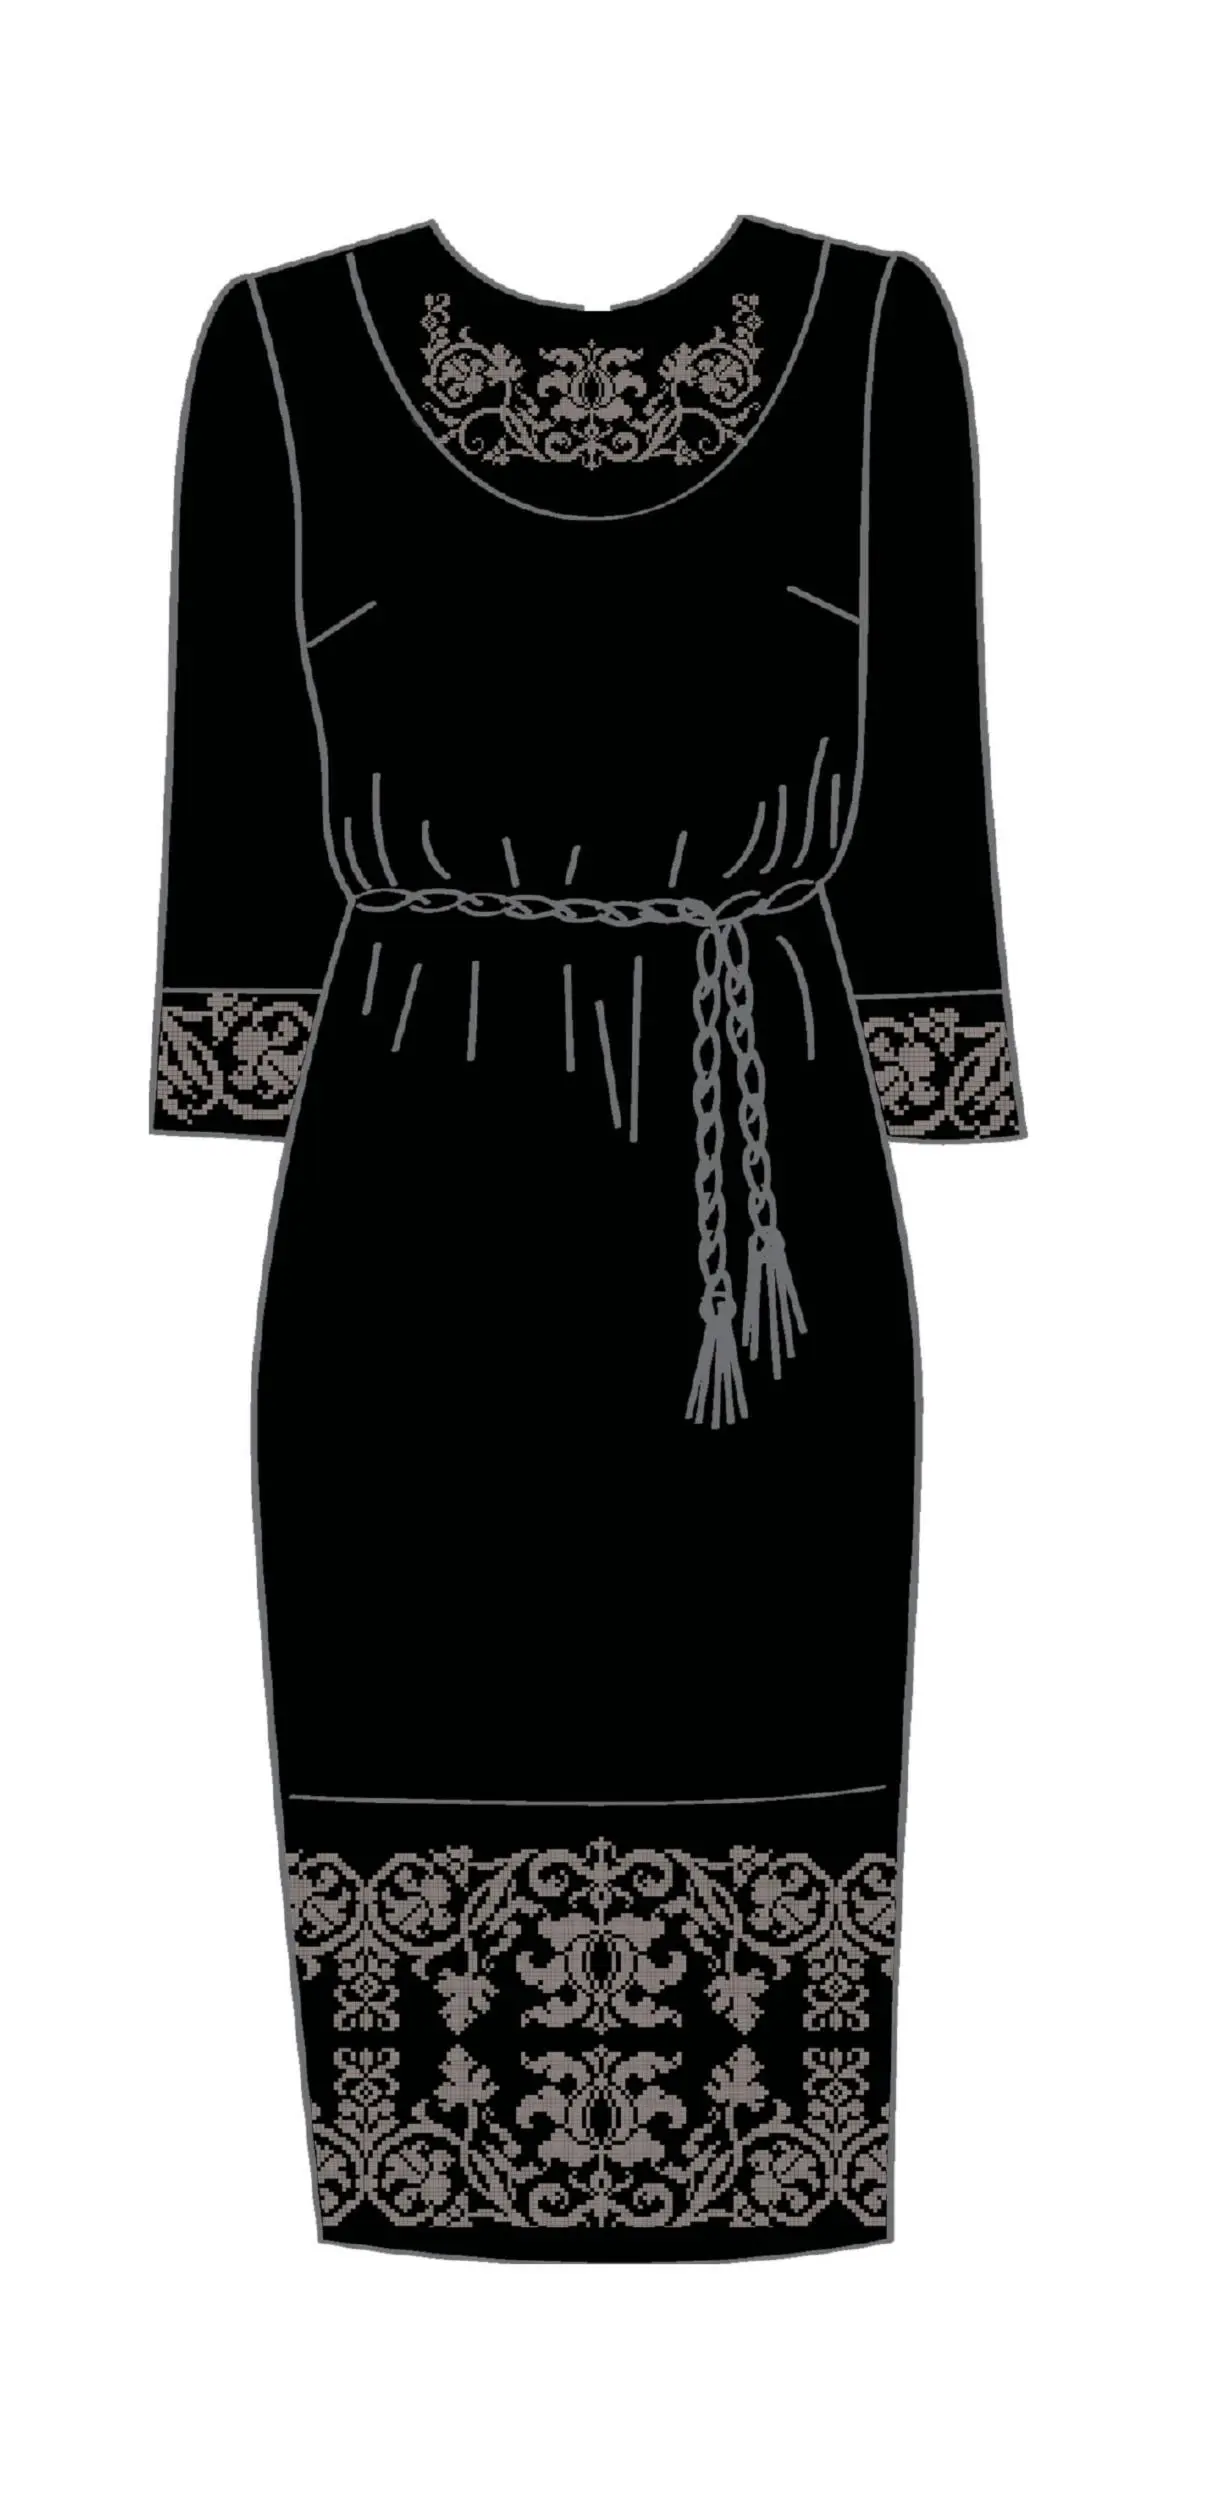 820-14/10 Плаття жіноче з поясом, чорне, розмір 54